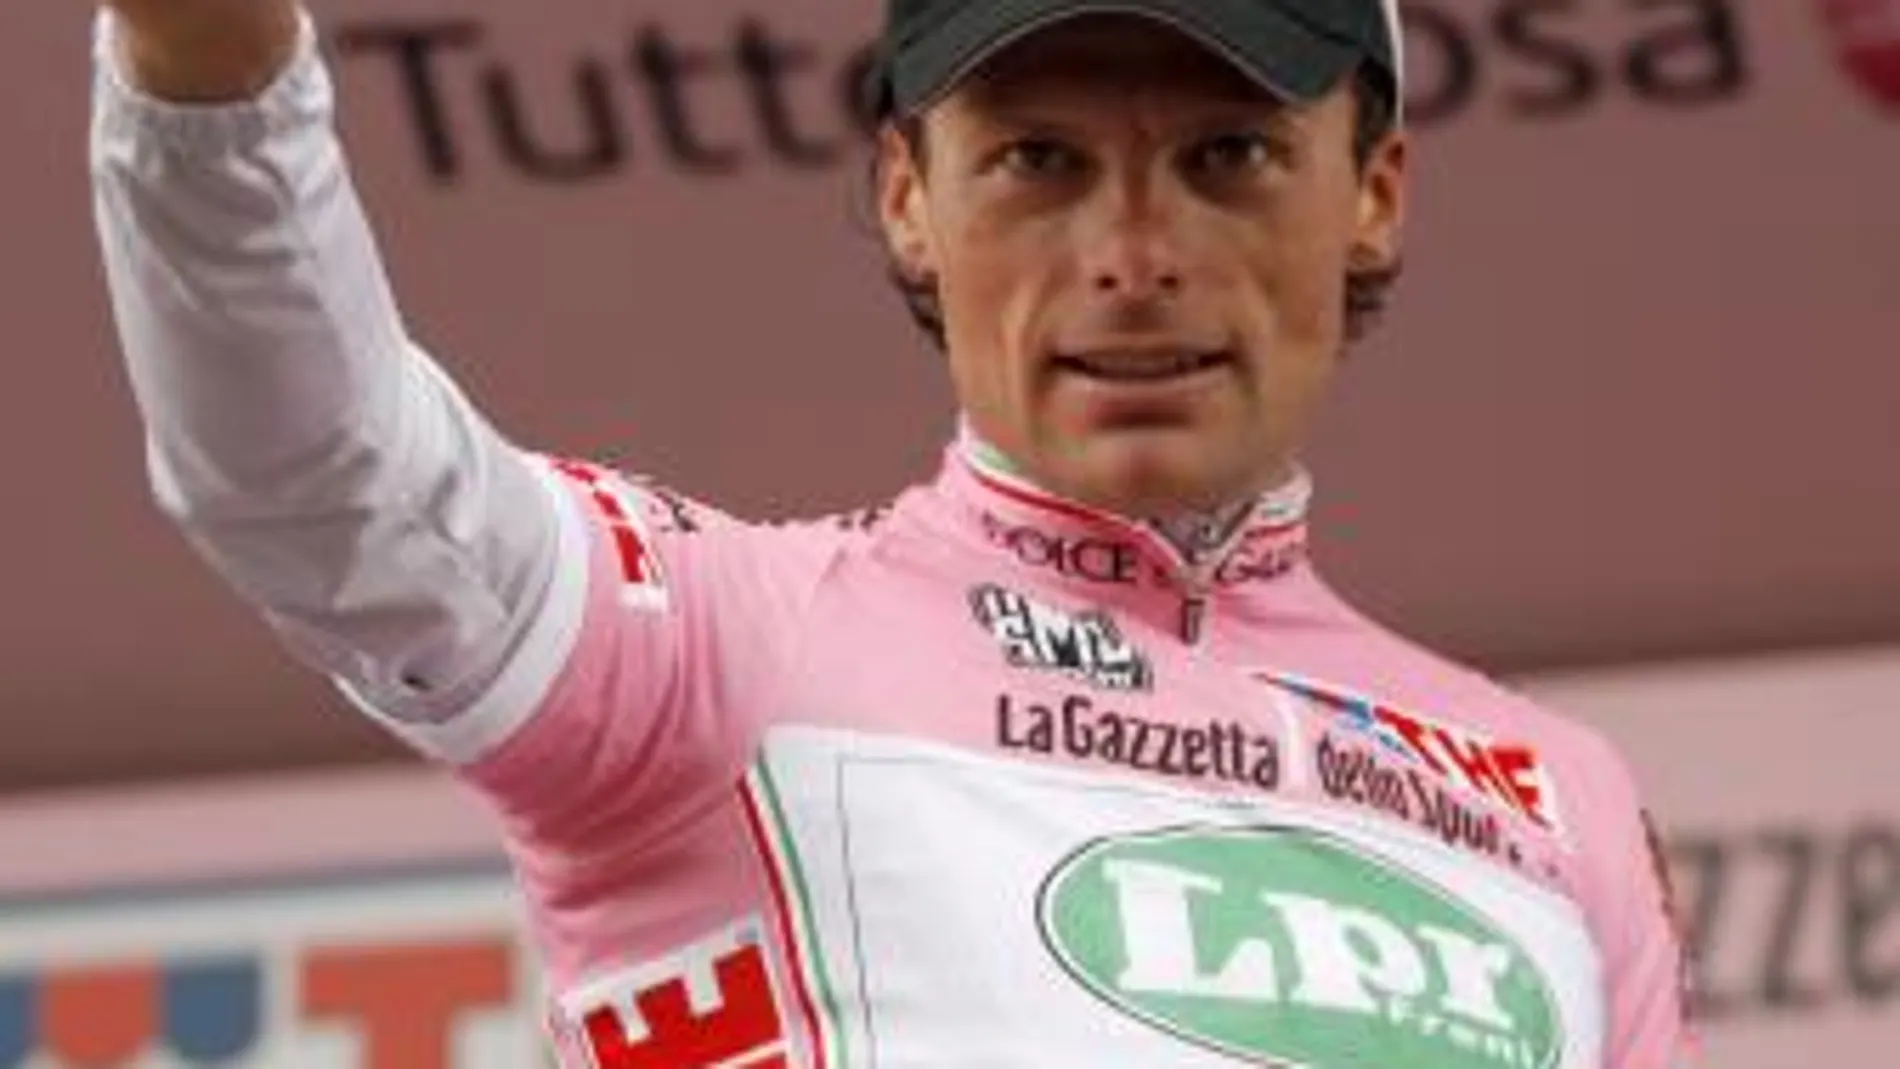 Di Luca, positivo por CERA en el Giro 2009 en el que fue segundo